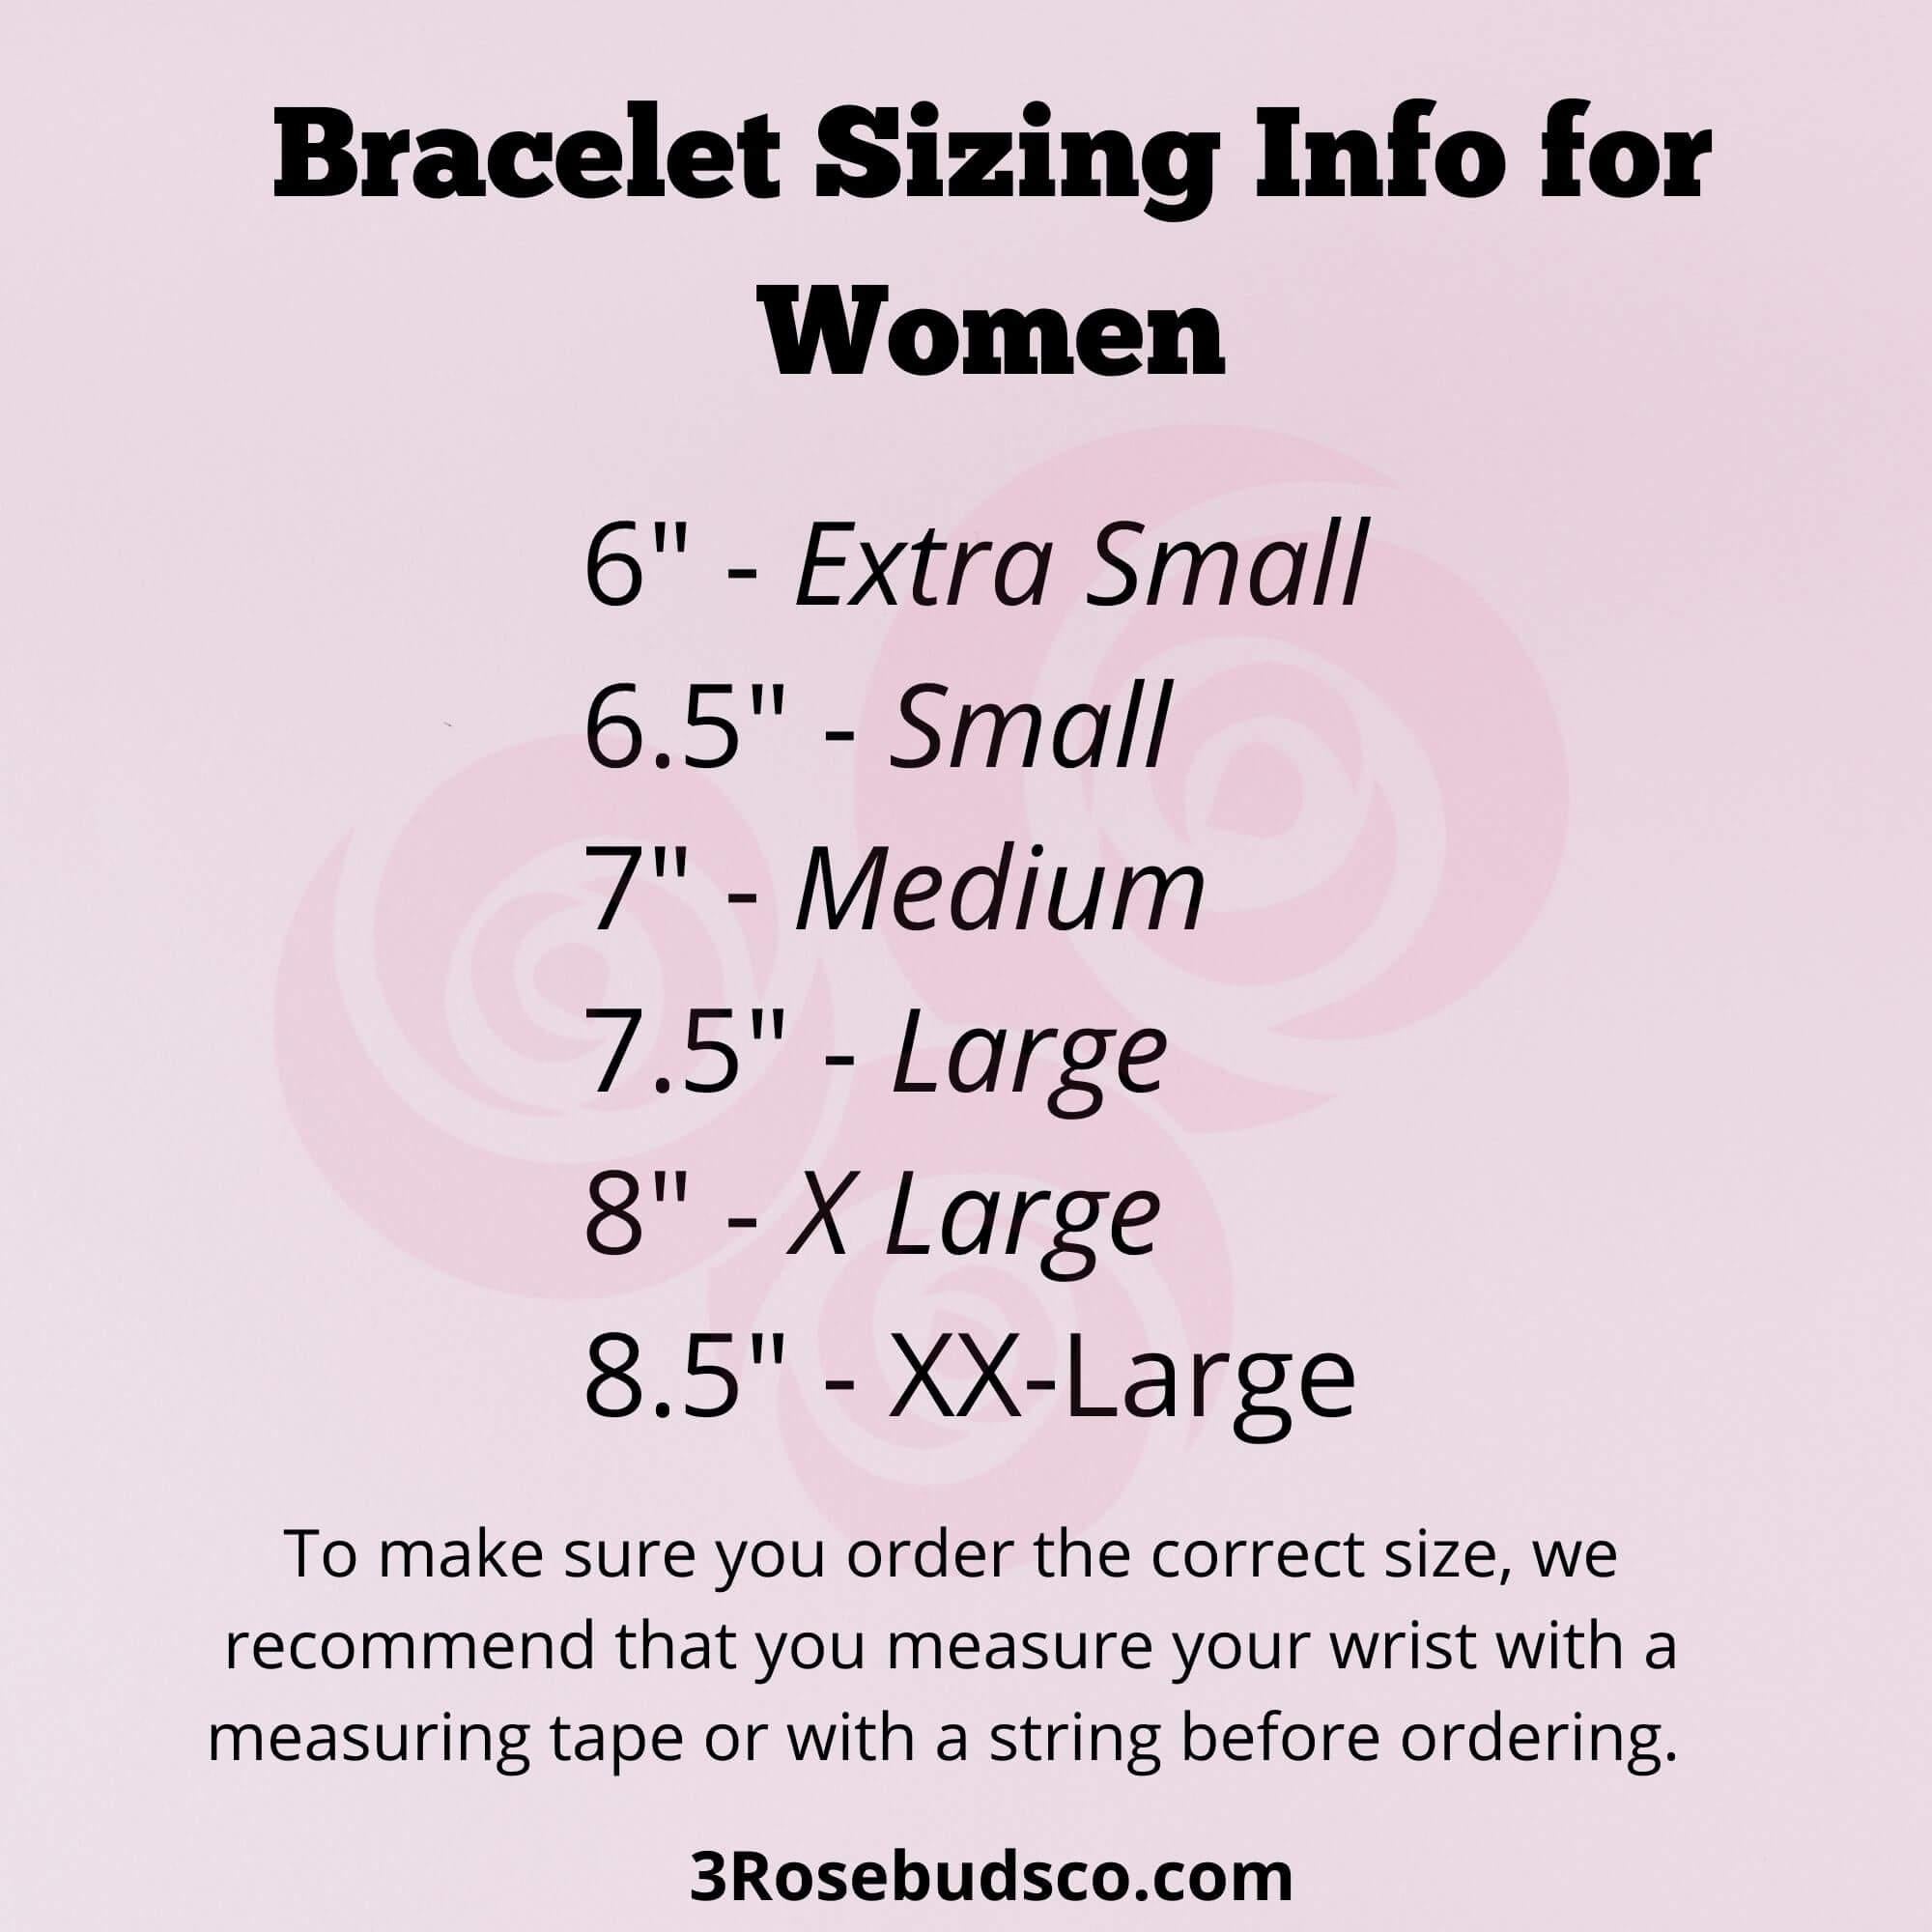 Fertility Support Bracelet with Evil Eye Charm - 3Rosebudsco.com